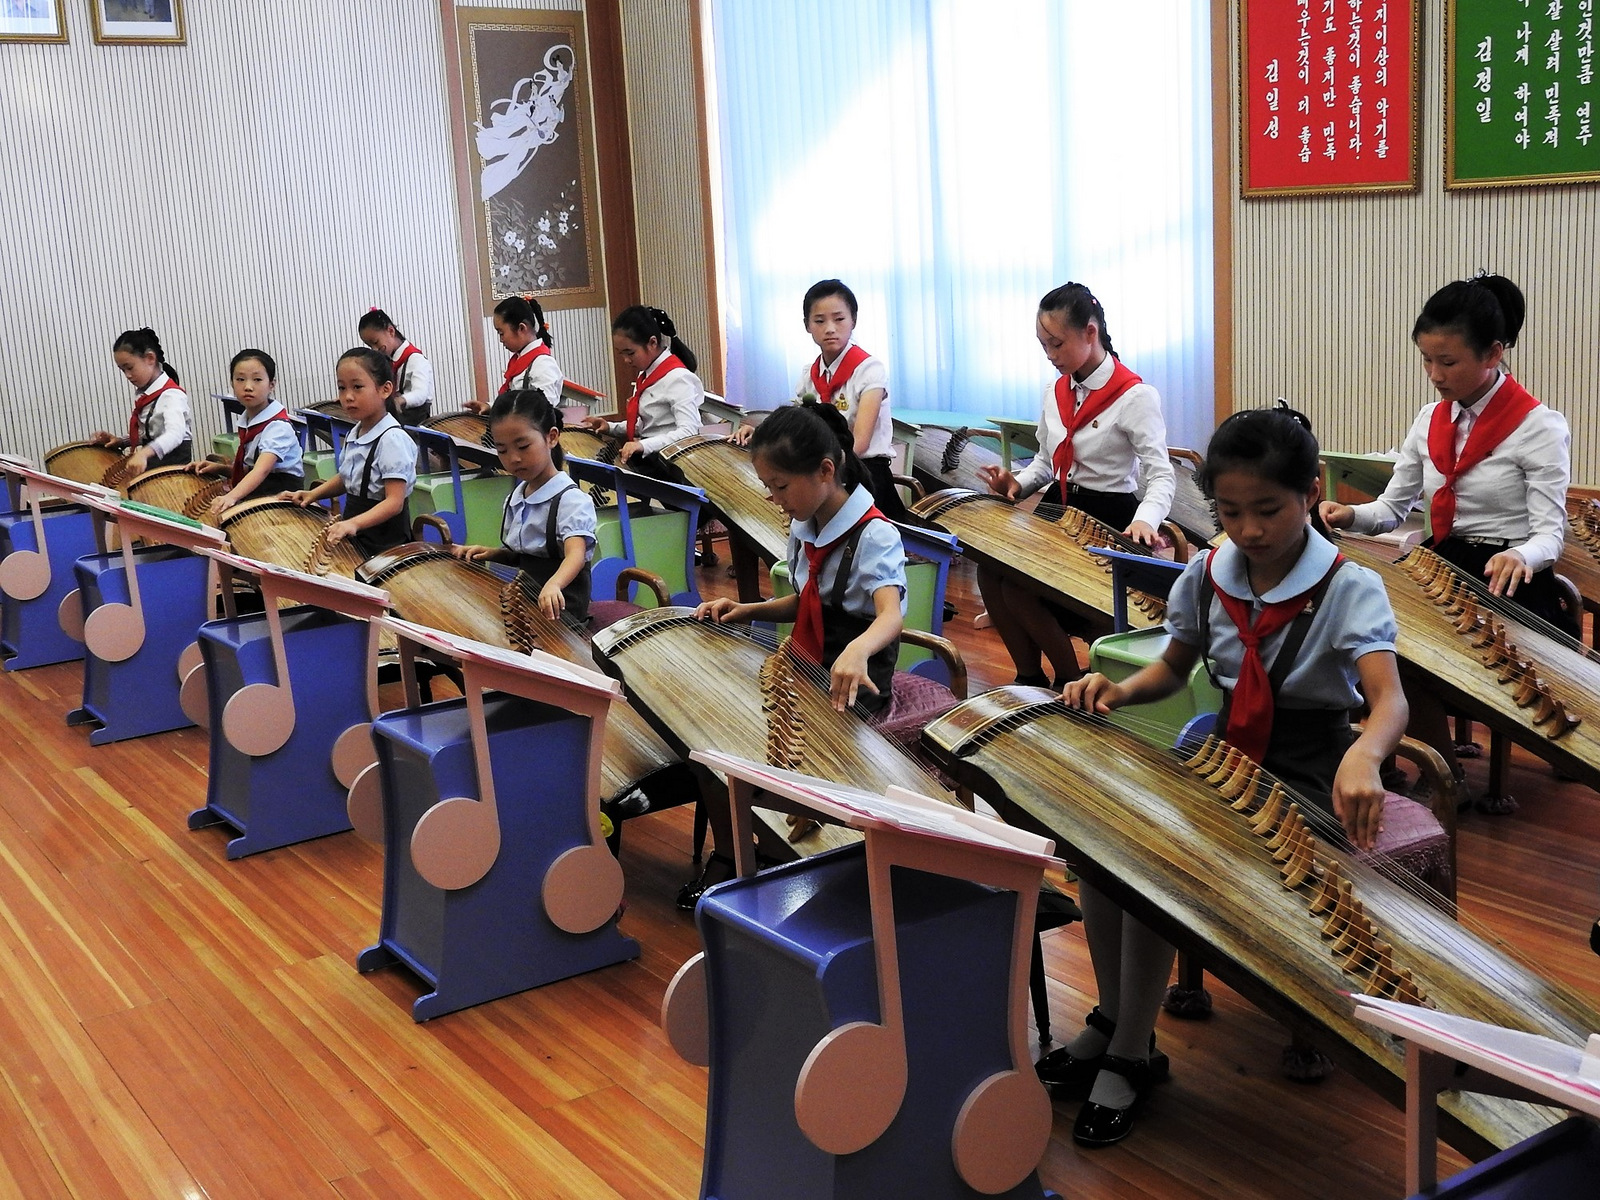 Μαθαίνοντας το παραδοσιακό κορεατικό μουσικό όργανο Kayagun.